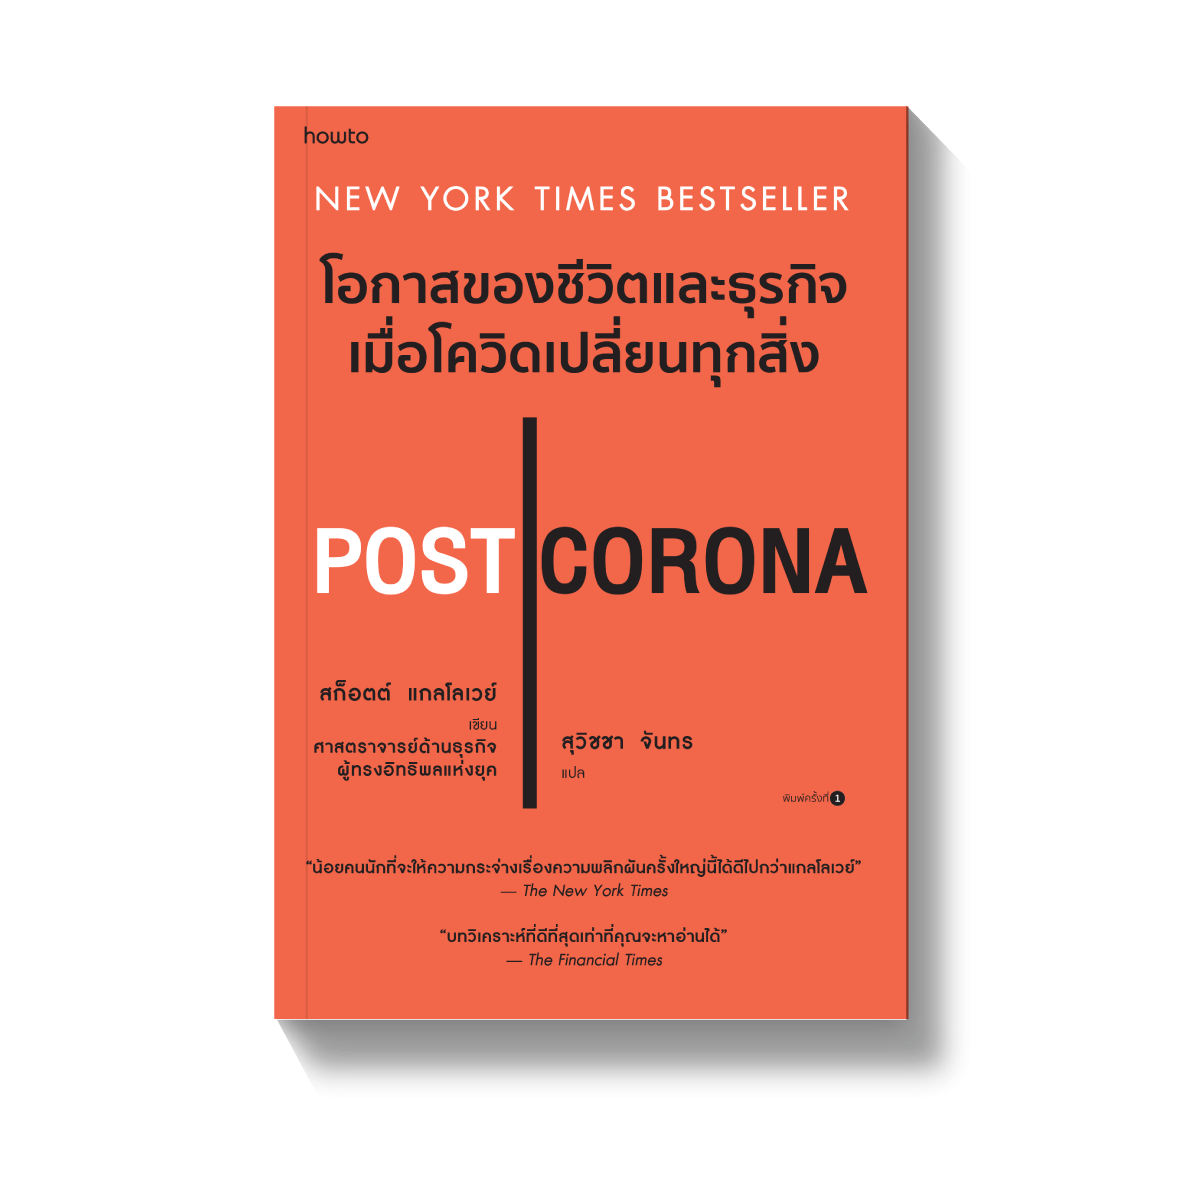 Post Corona โอกาสของชีวิตและธุรกิจ L Amarinbooks L Howto